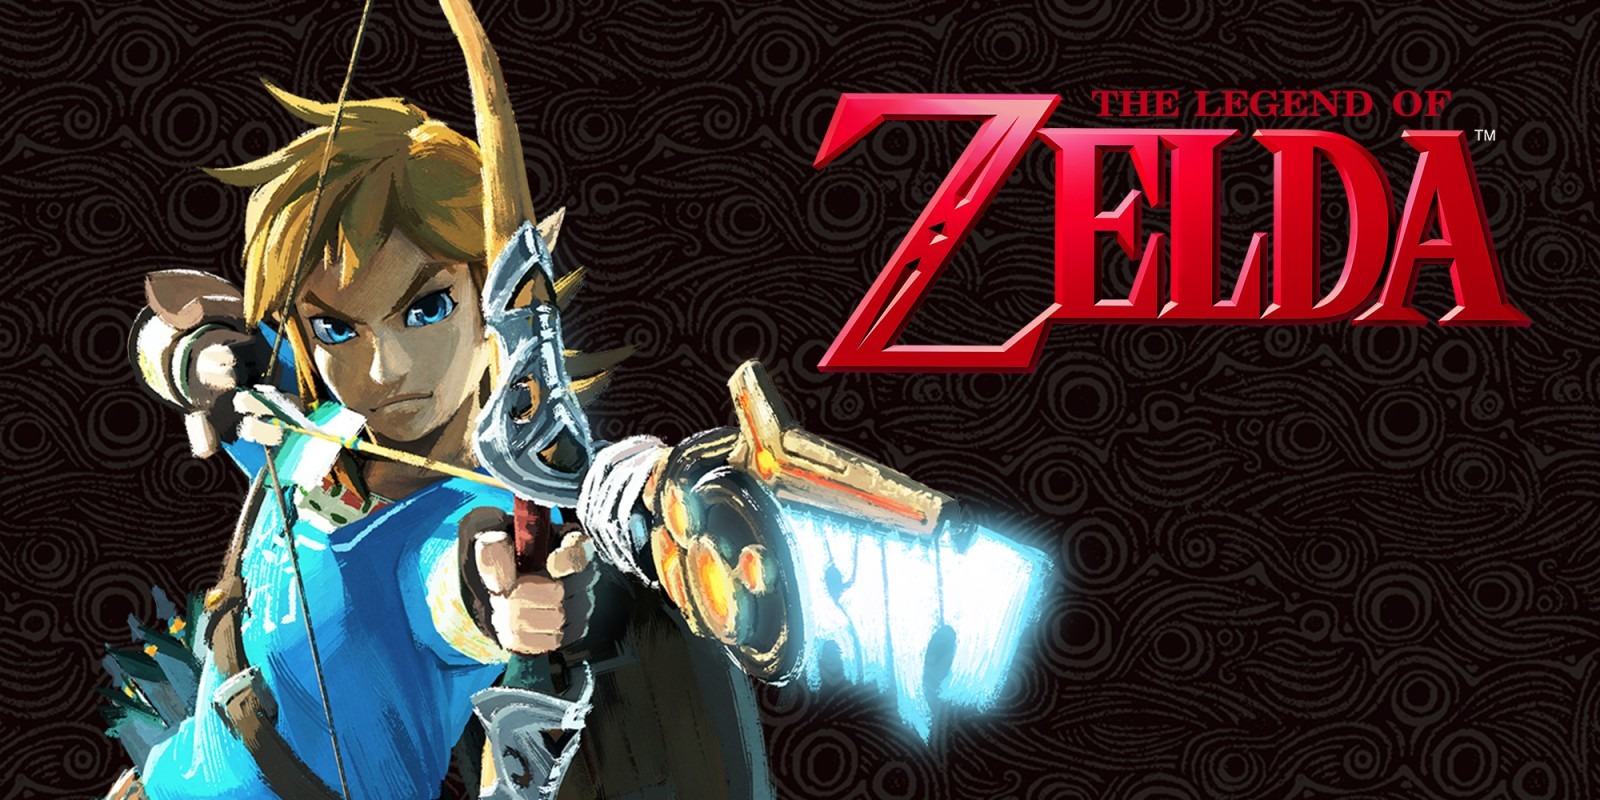 Pourquoi Nintendo a annulé le projet d'adaptation de "Zelda" sur Netflix ?